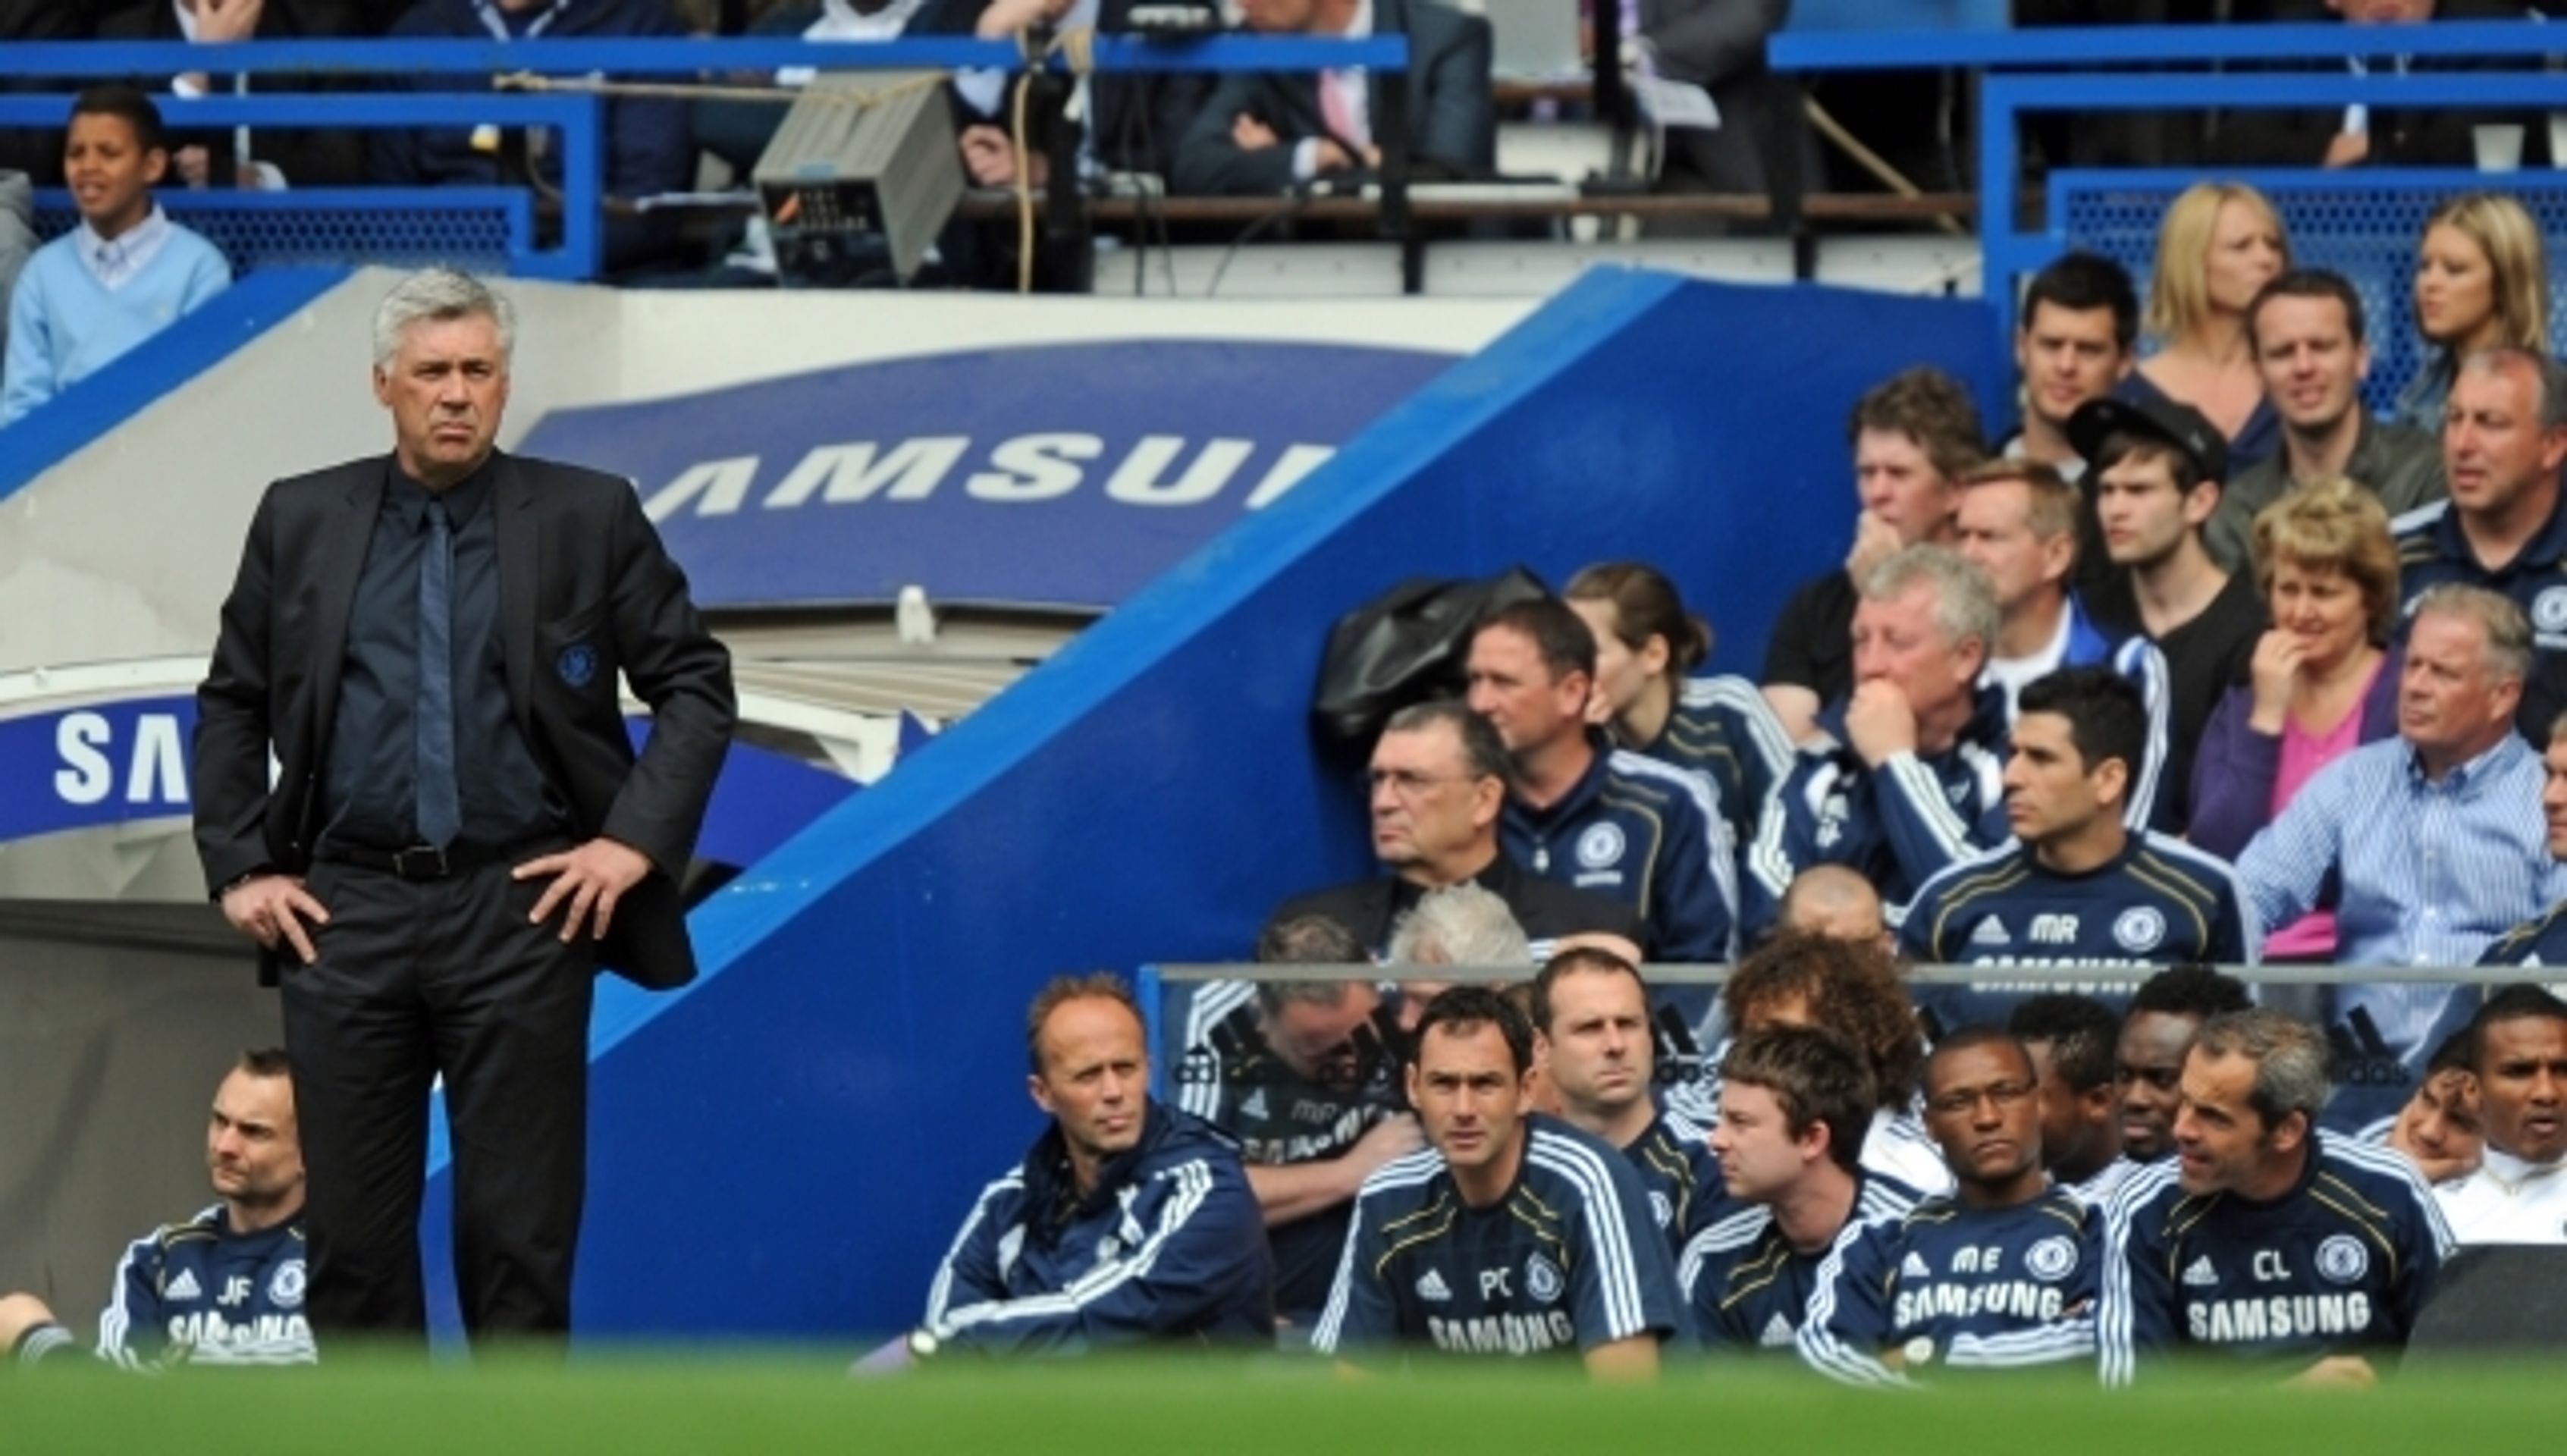 Abramovičovi trenéři v Chelsea - 3 - GALERIE: Abramovičovi trenéři v Chelsea (12/19)